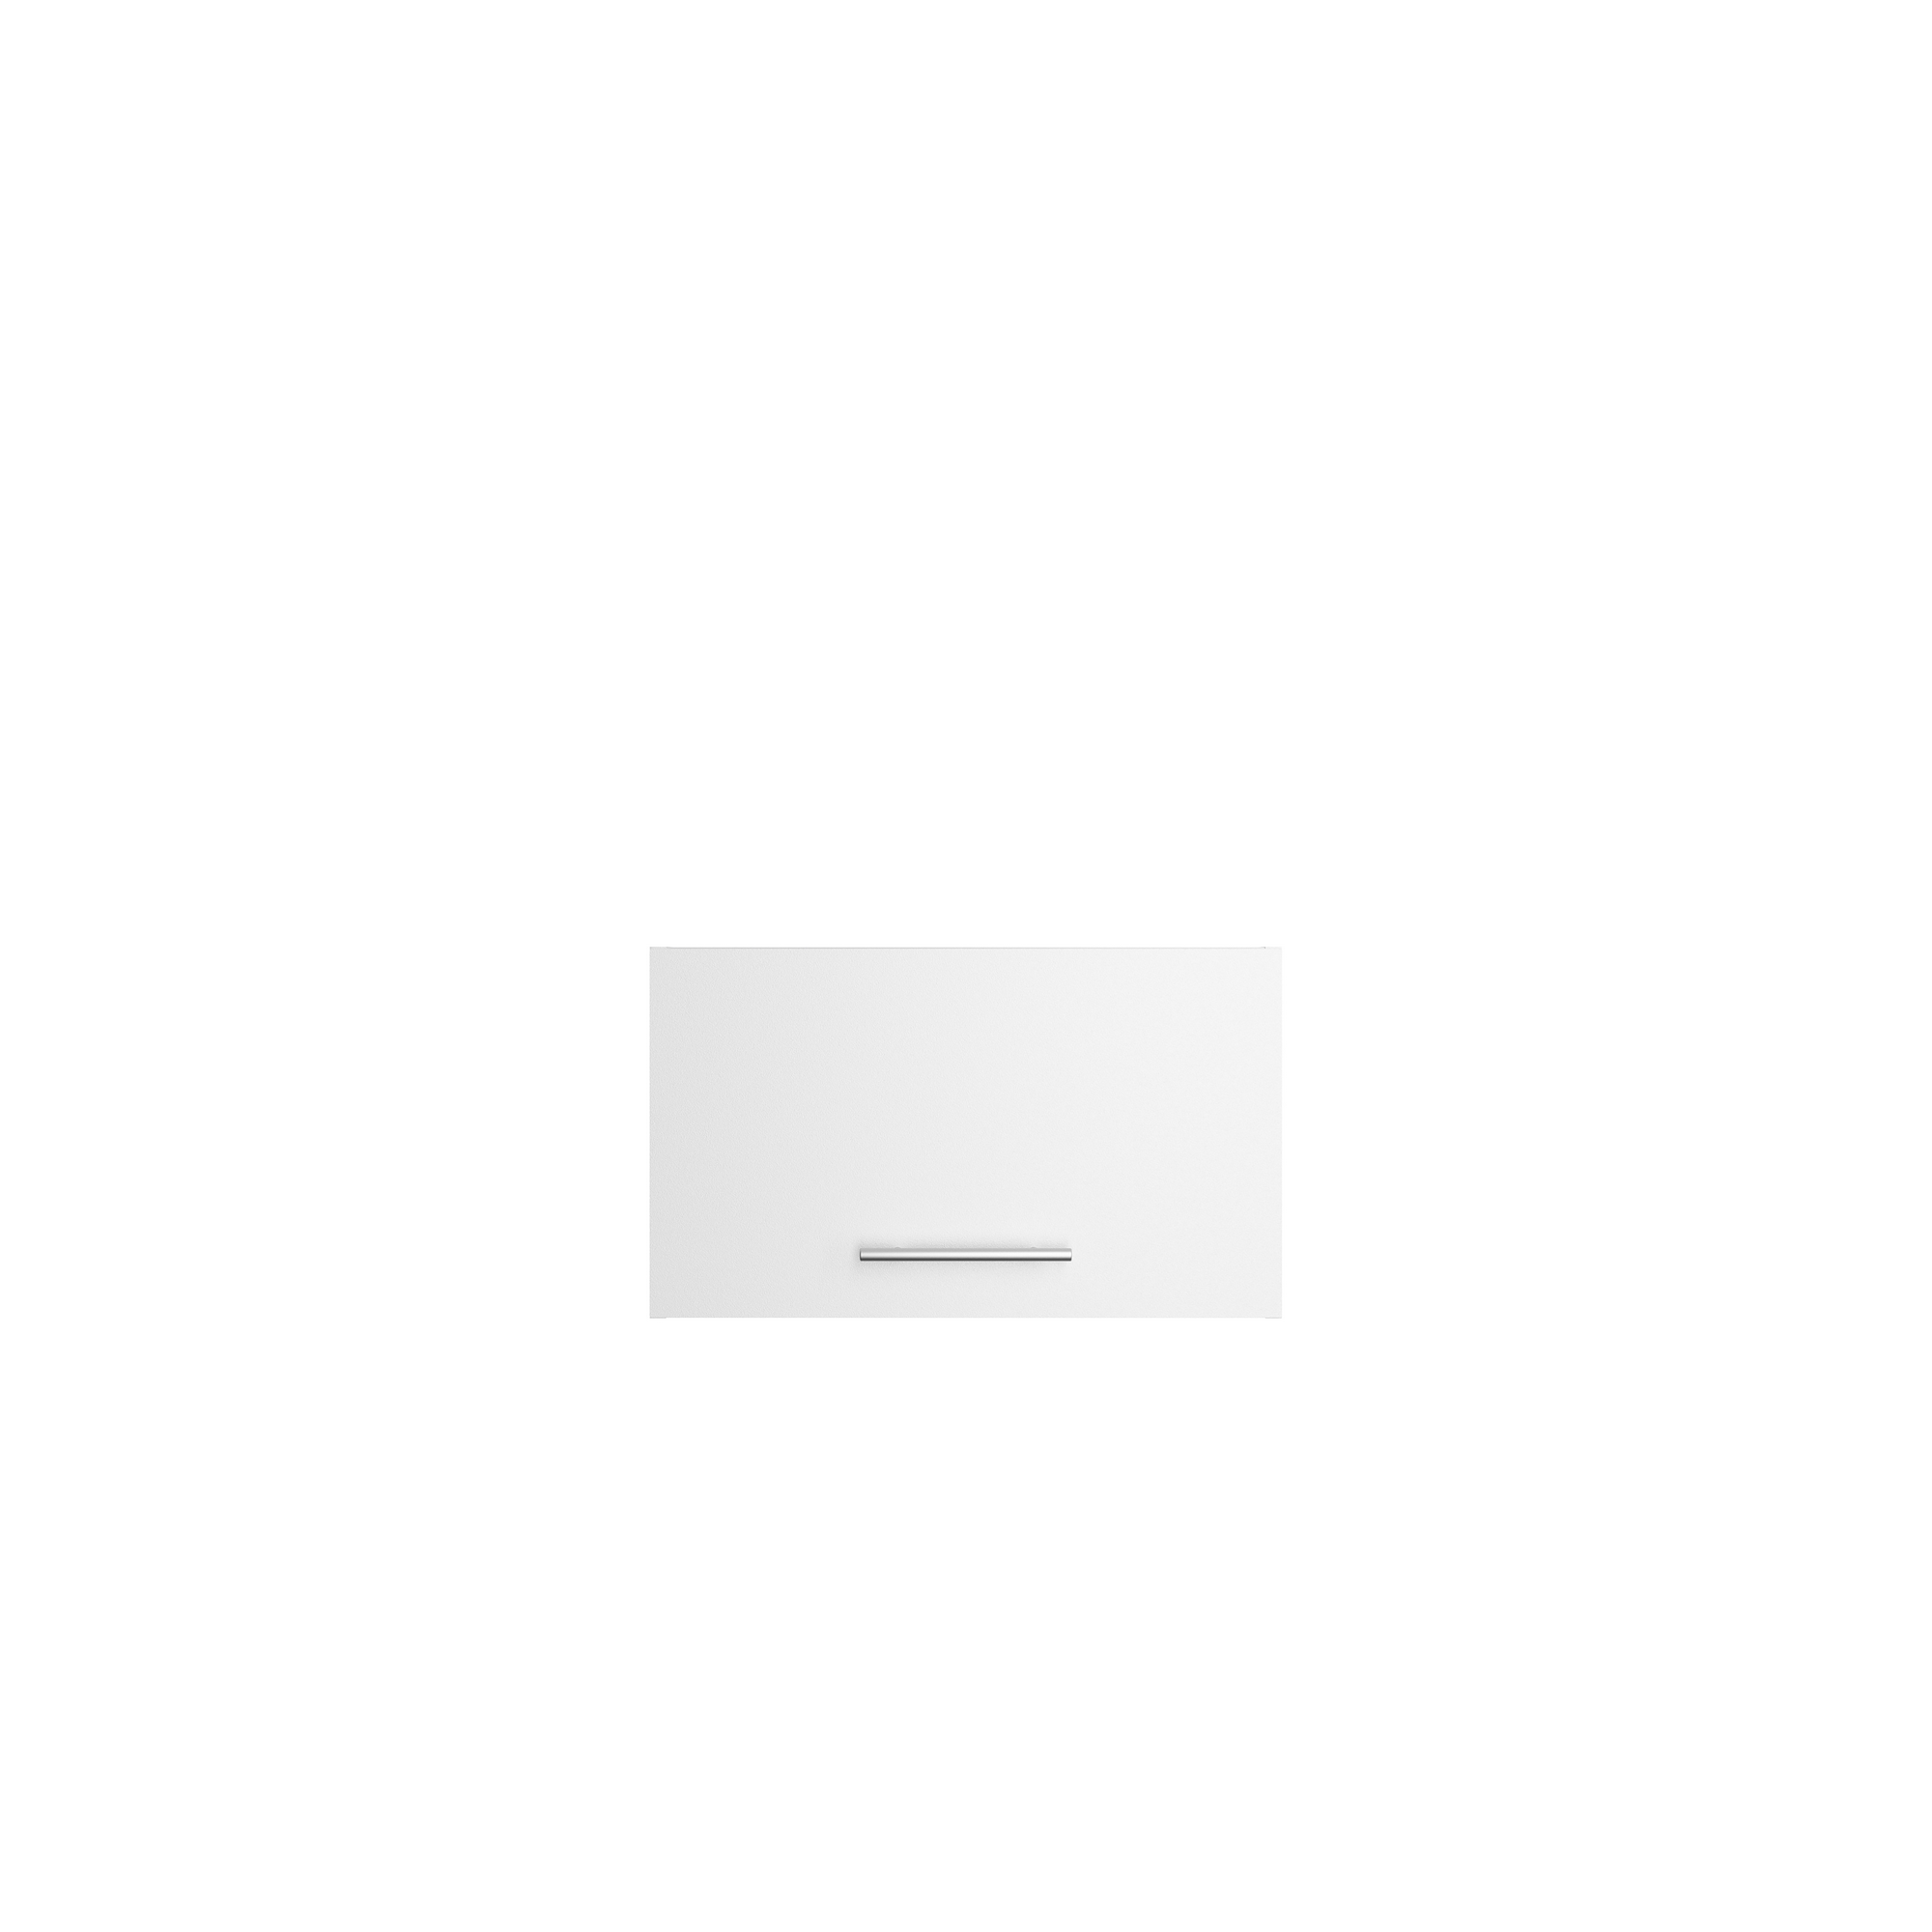 Oberschrank 'Optikomfort Bengt932' weiß 60 x 35,2 x 34,9 cm + product picture